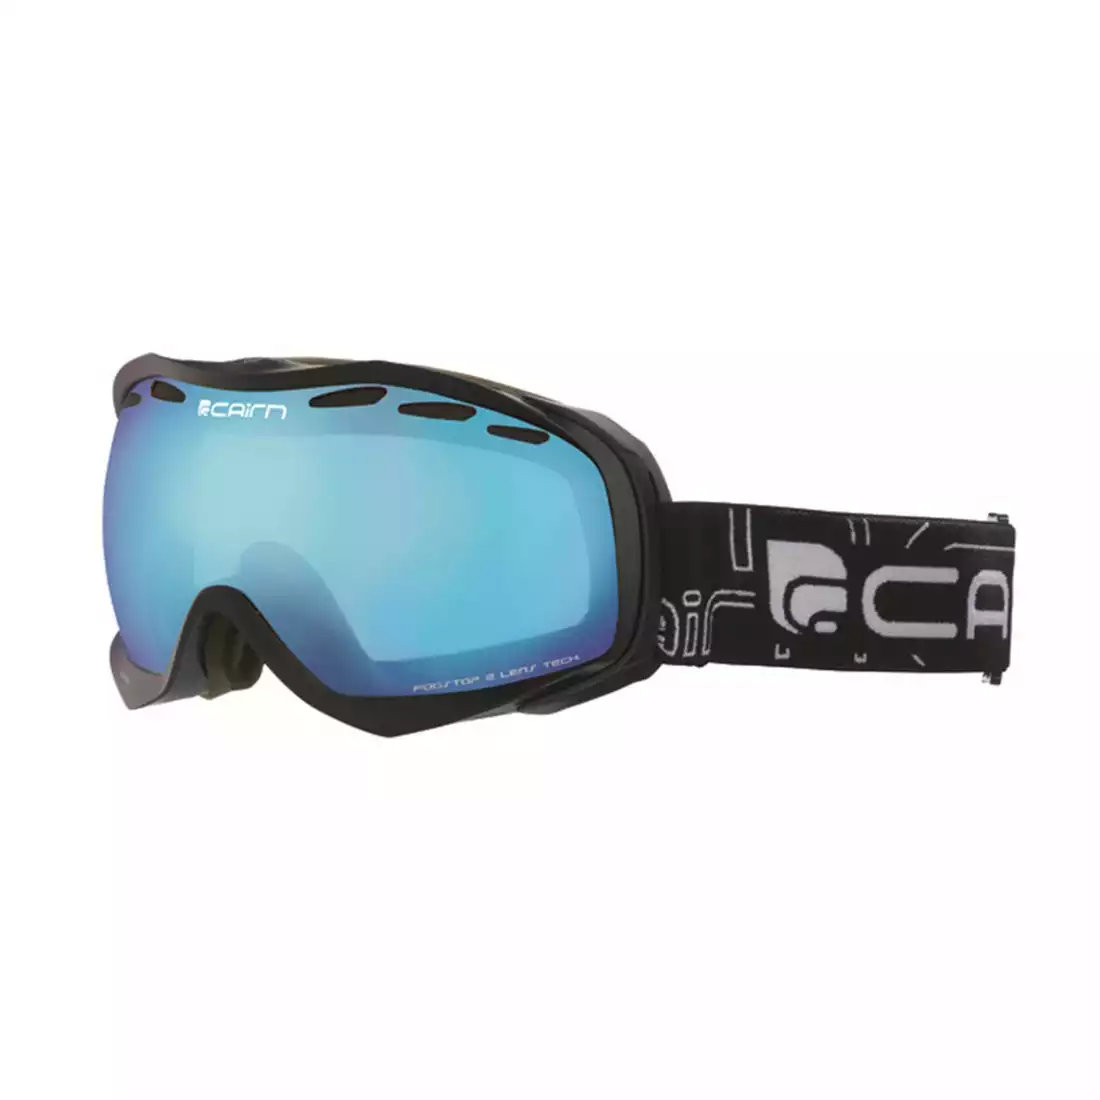 CAIRN gogle narciarskie/snowboardowe ALPHA SPX3000 8202, black/blue 5808518202